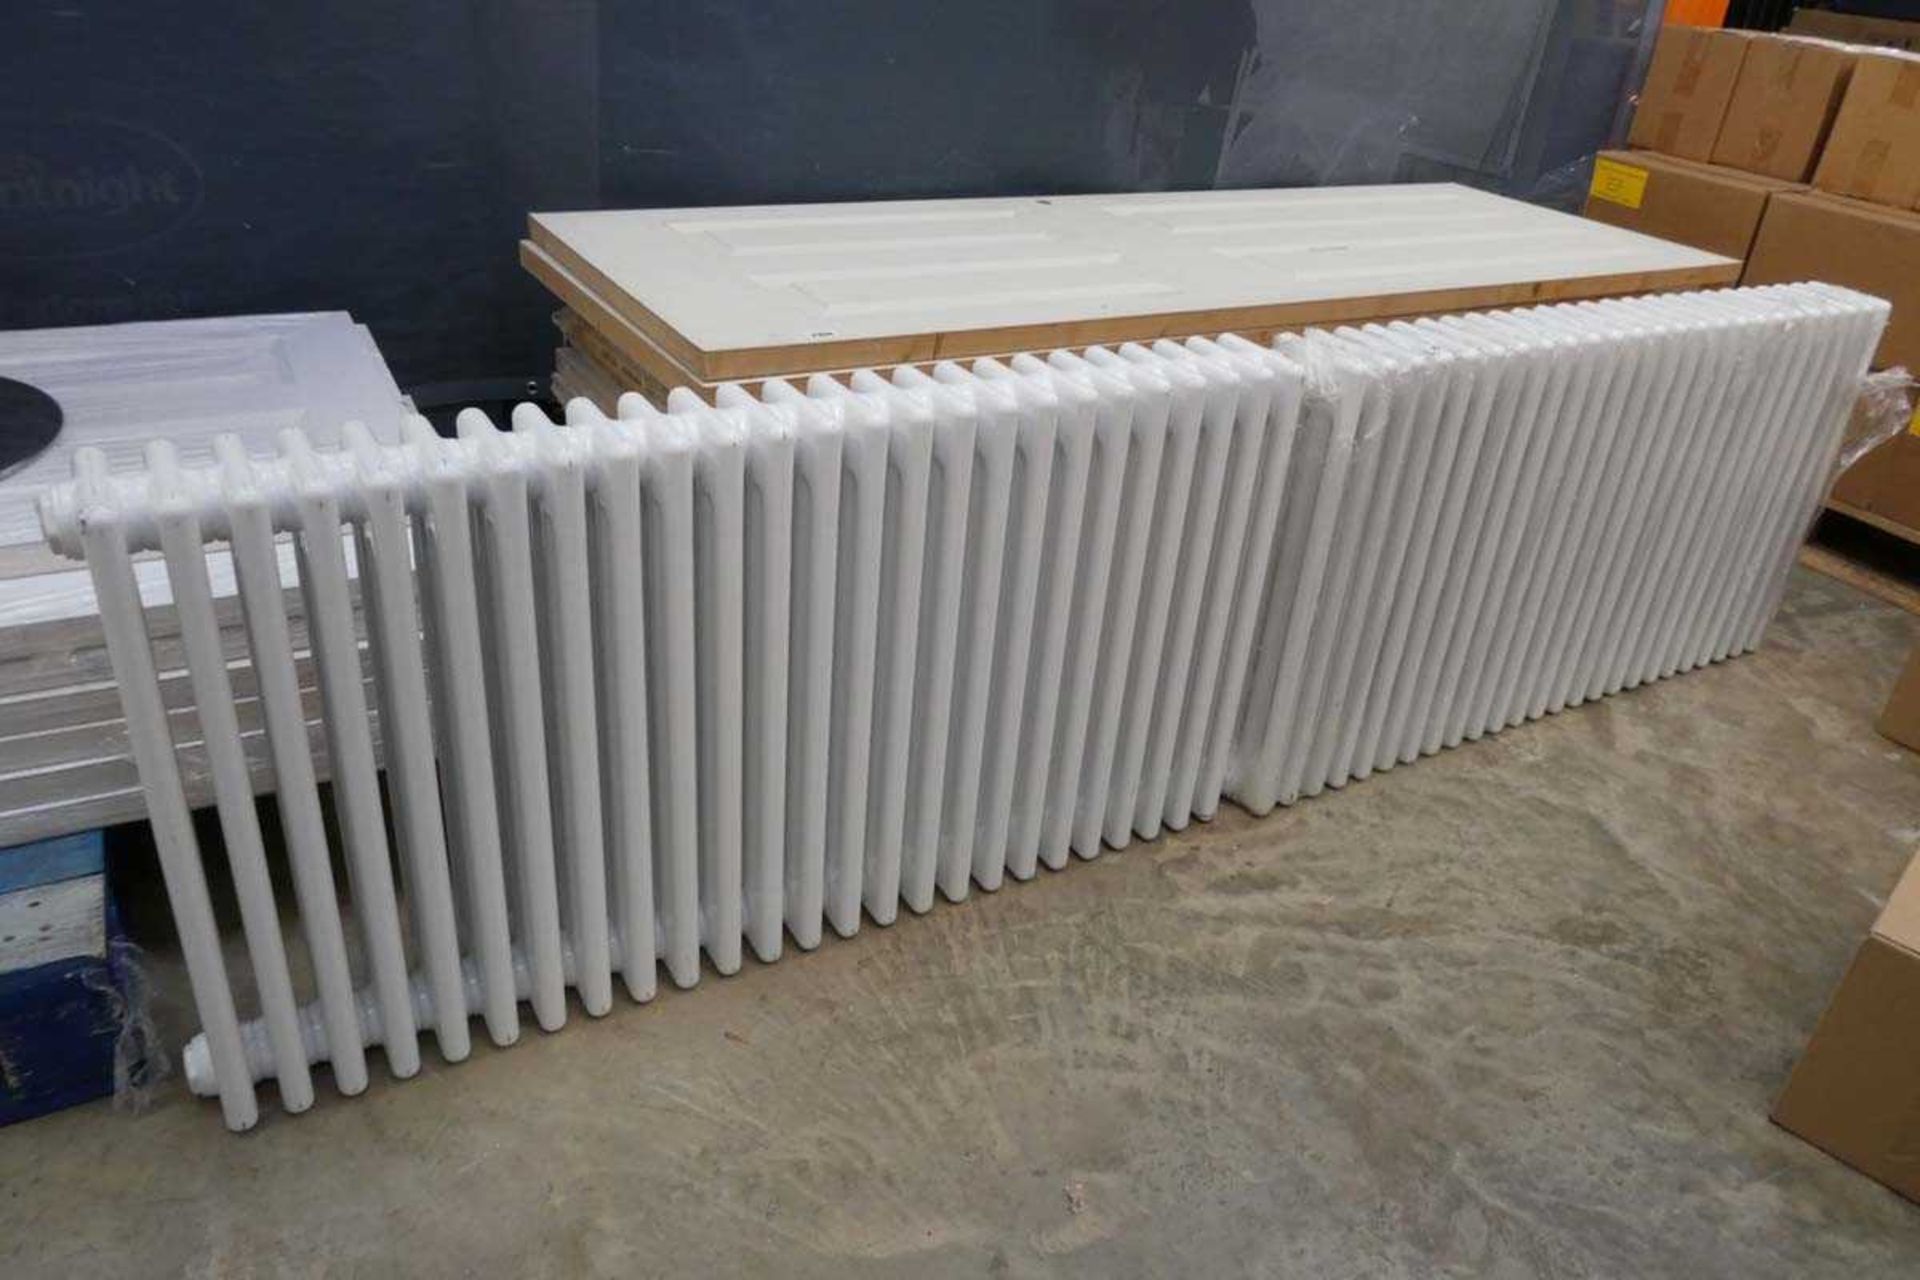 2 Victorian style white powder coated finished radiators